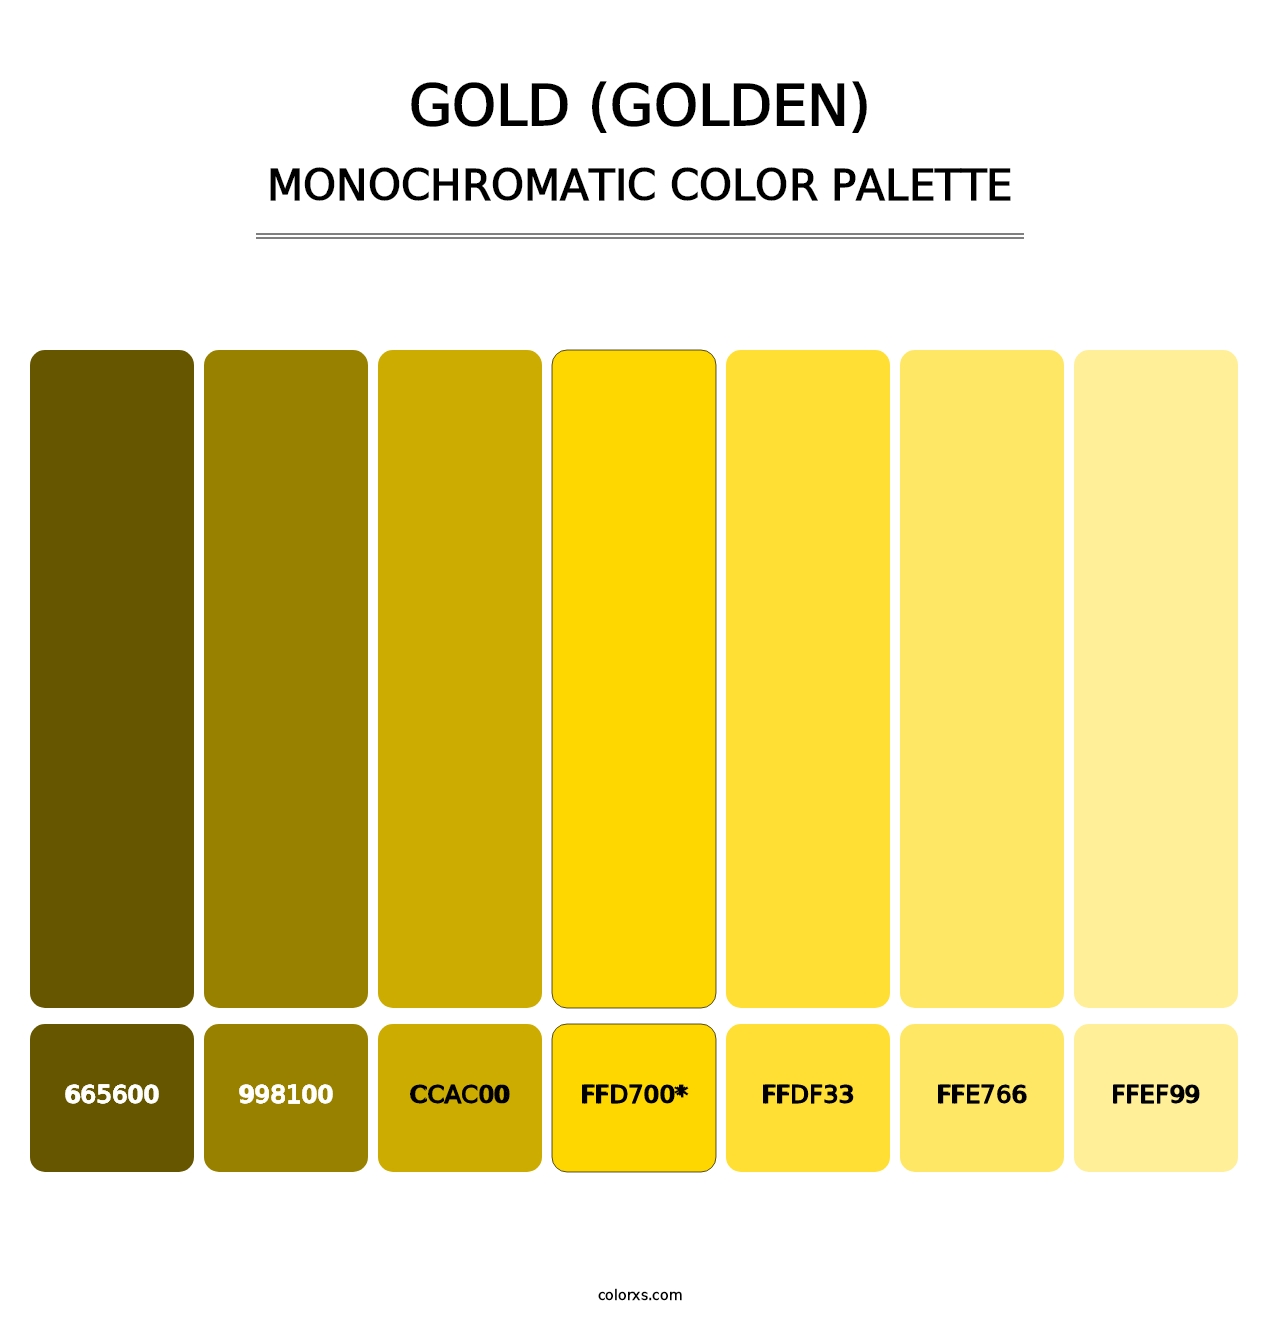 Gold (Golden) - Monochromatic Color Palette